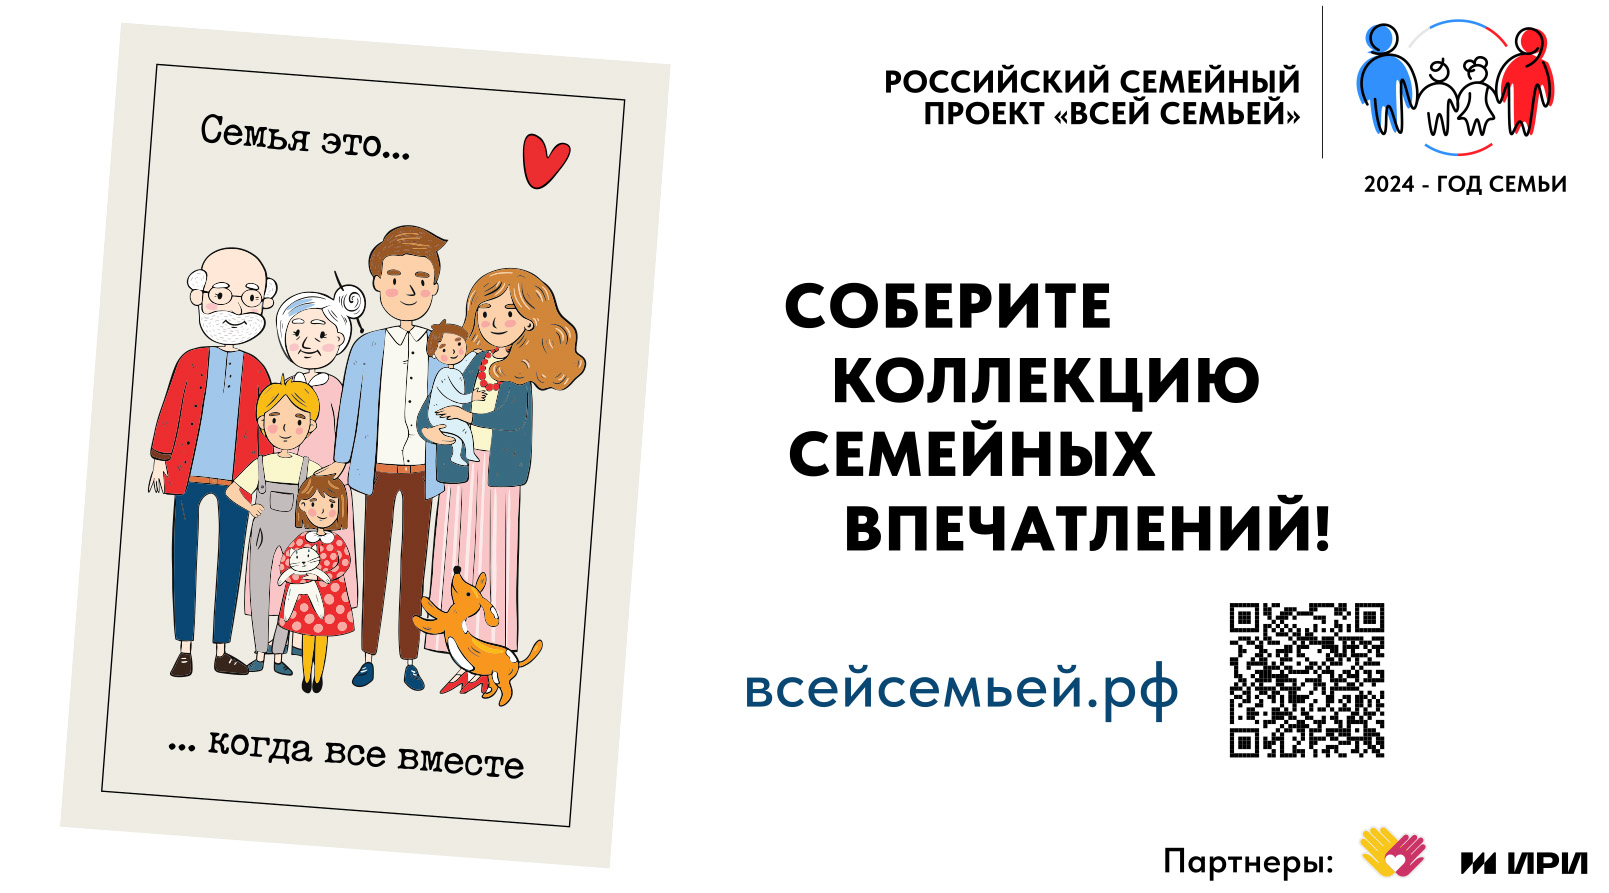 Якутяне могут выиграть путешествие и другие ценные призы во всероссийском проекте «Всей семьёй»